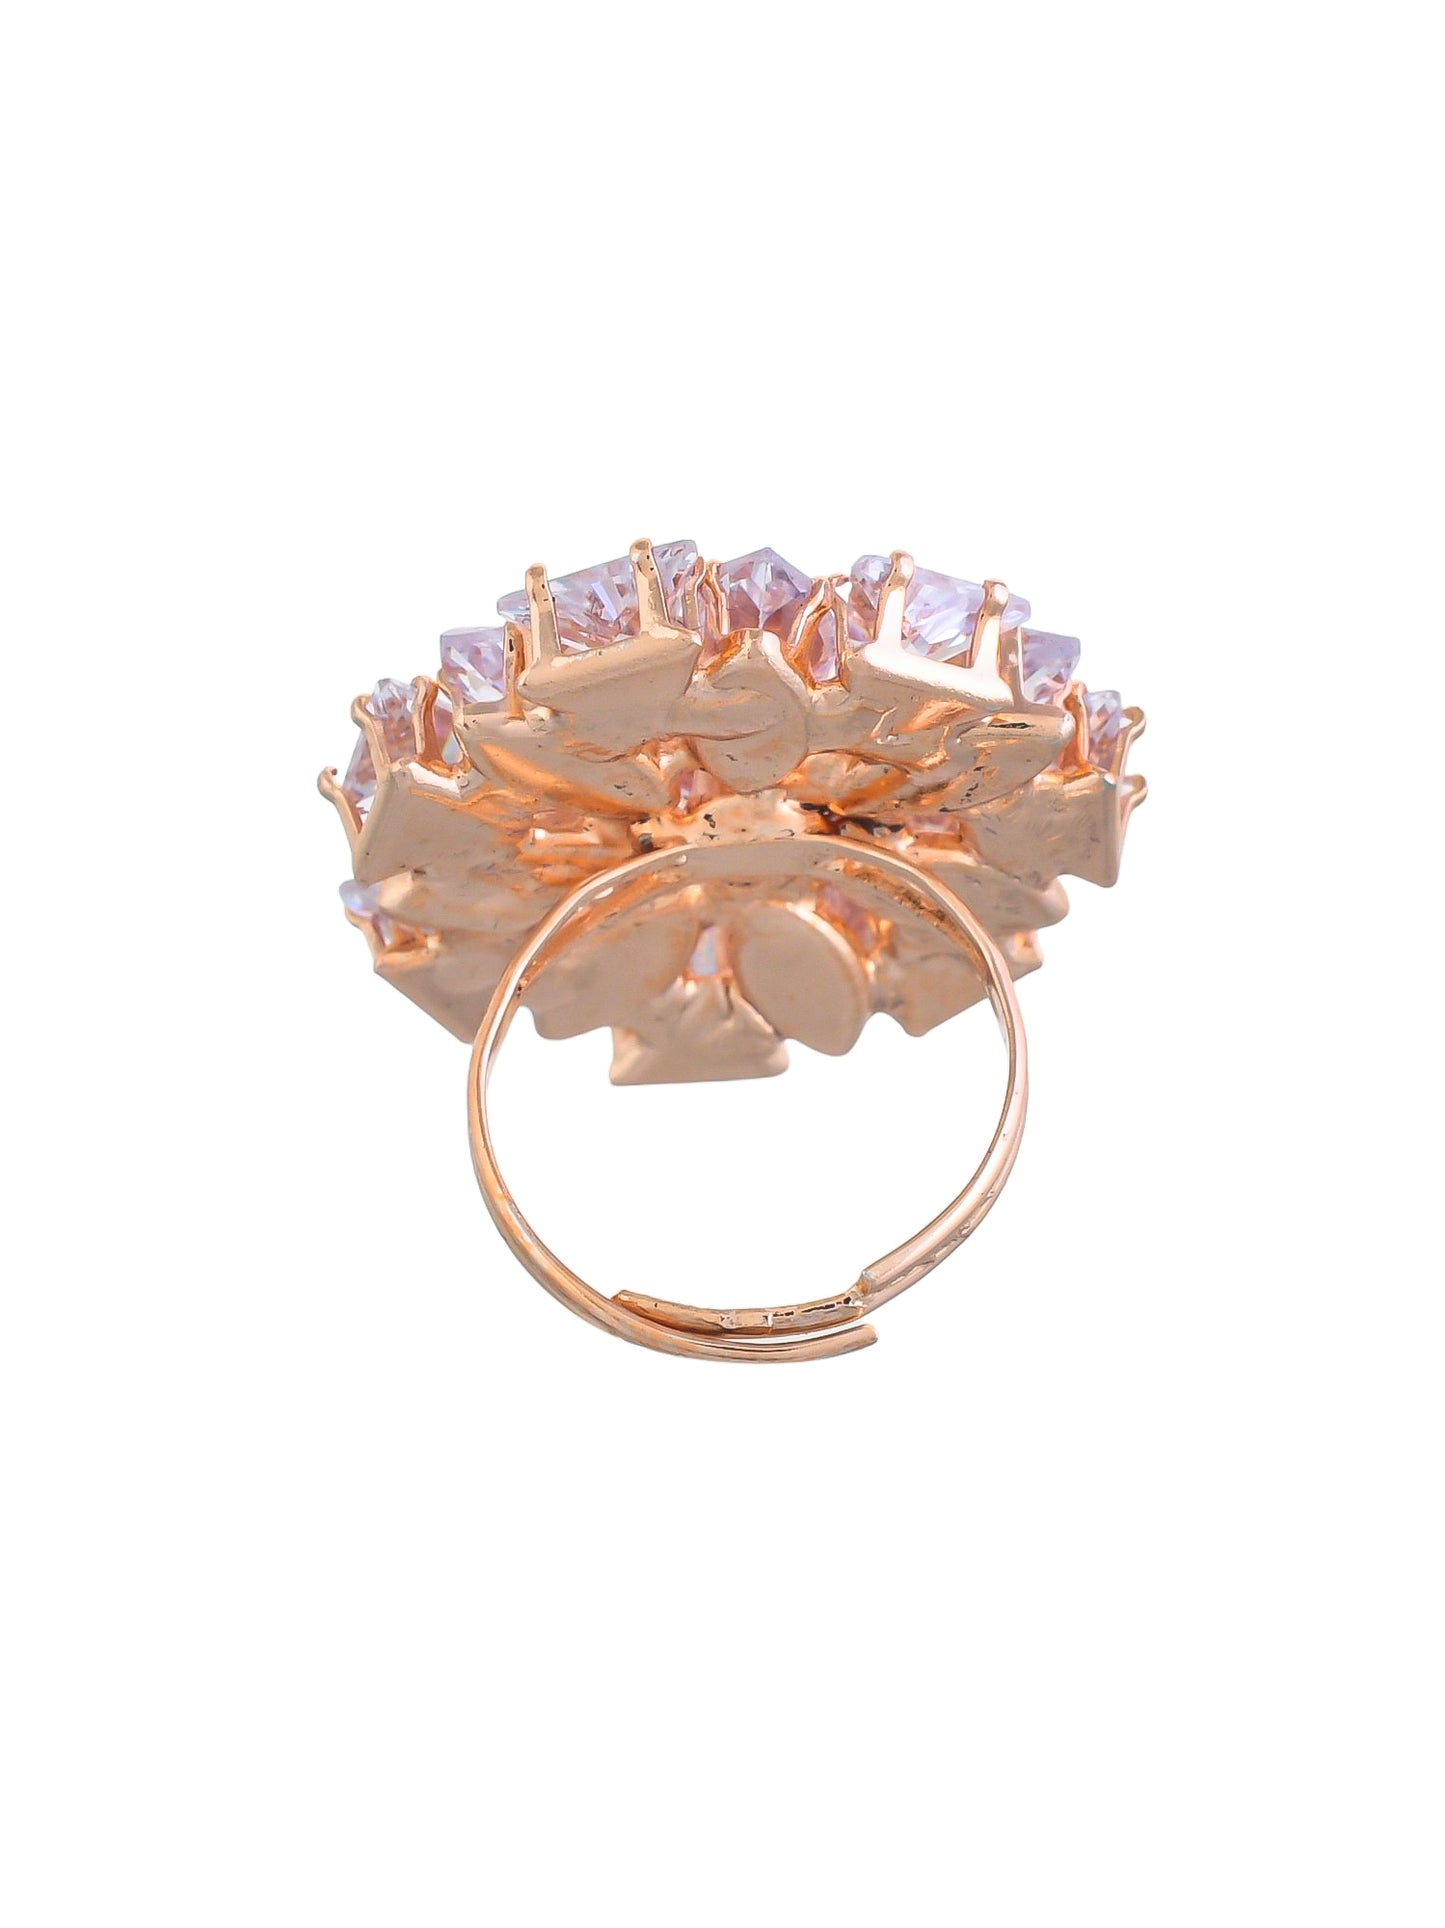 Tranding american diamond rings| Flower design rings for girls& women